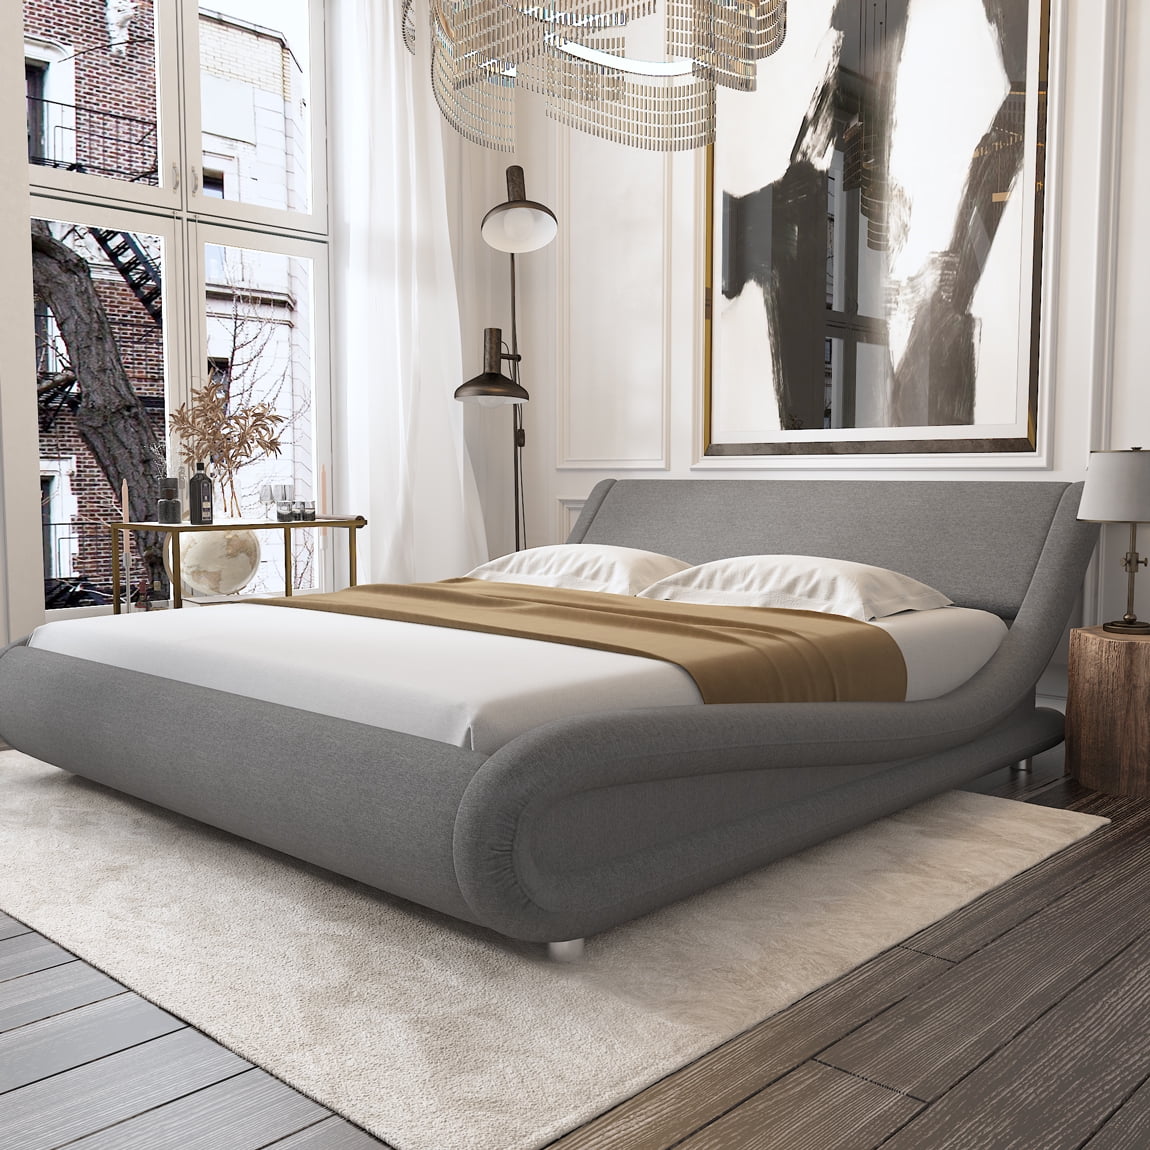 Fabric Upholstered Platform Bed Frame, Adjustable Bed Frame For Platform Bed